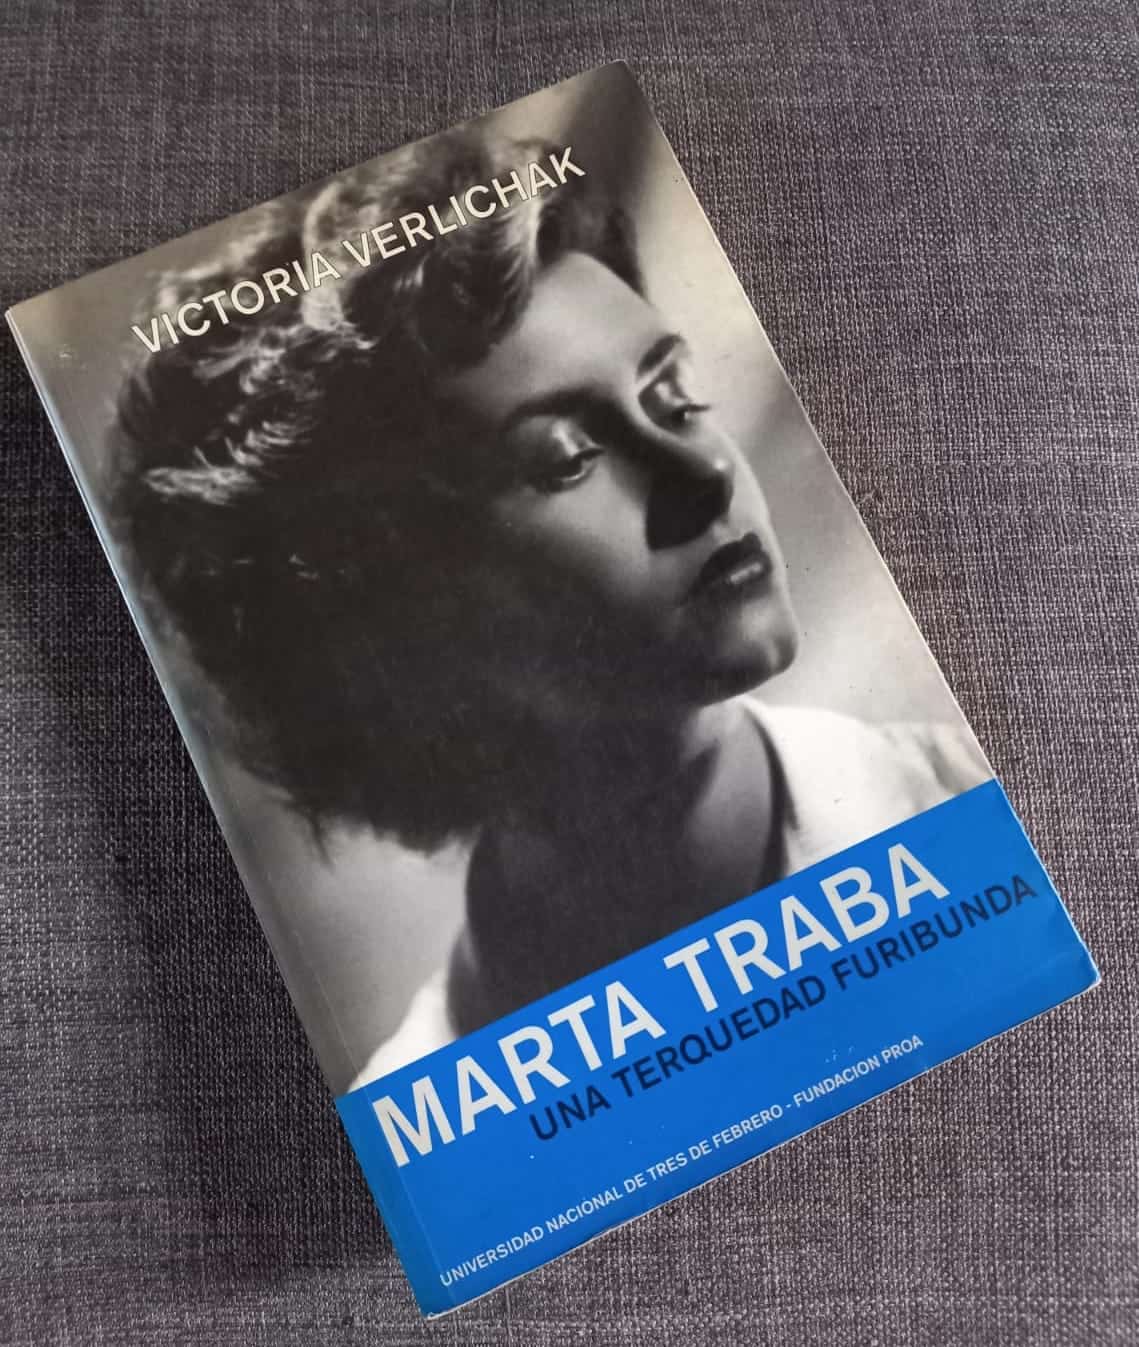  Marta Traba, Una terquedad furibunda. La biografía de referencia sobre escritora, escrita por Victoria Verlichak. Cortesía